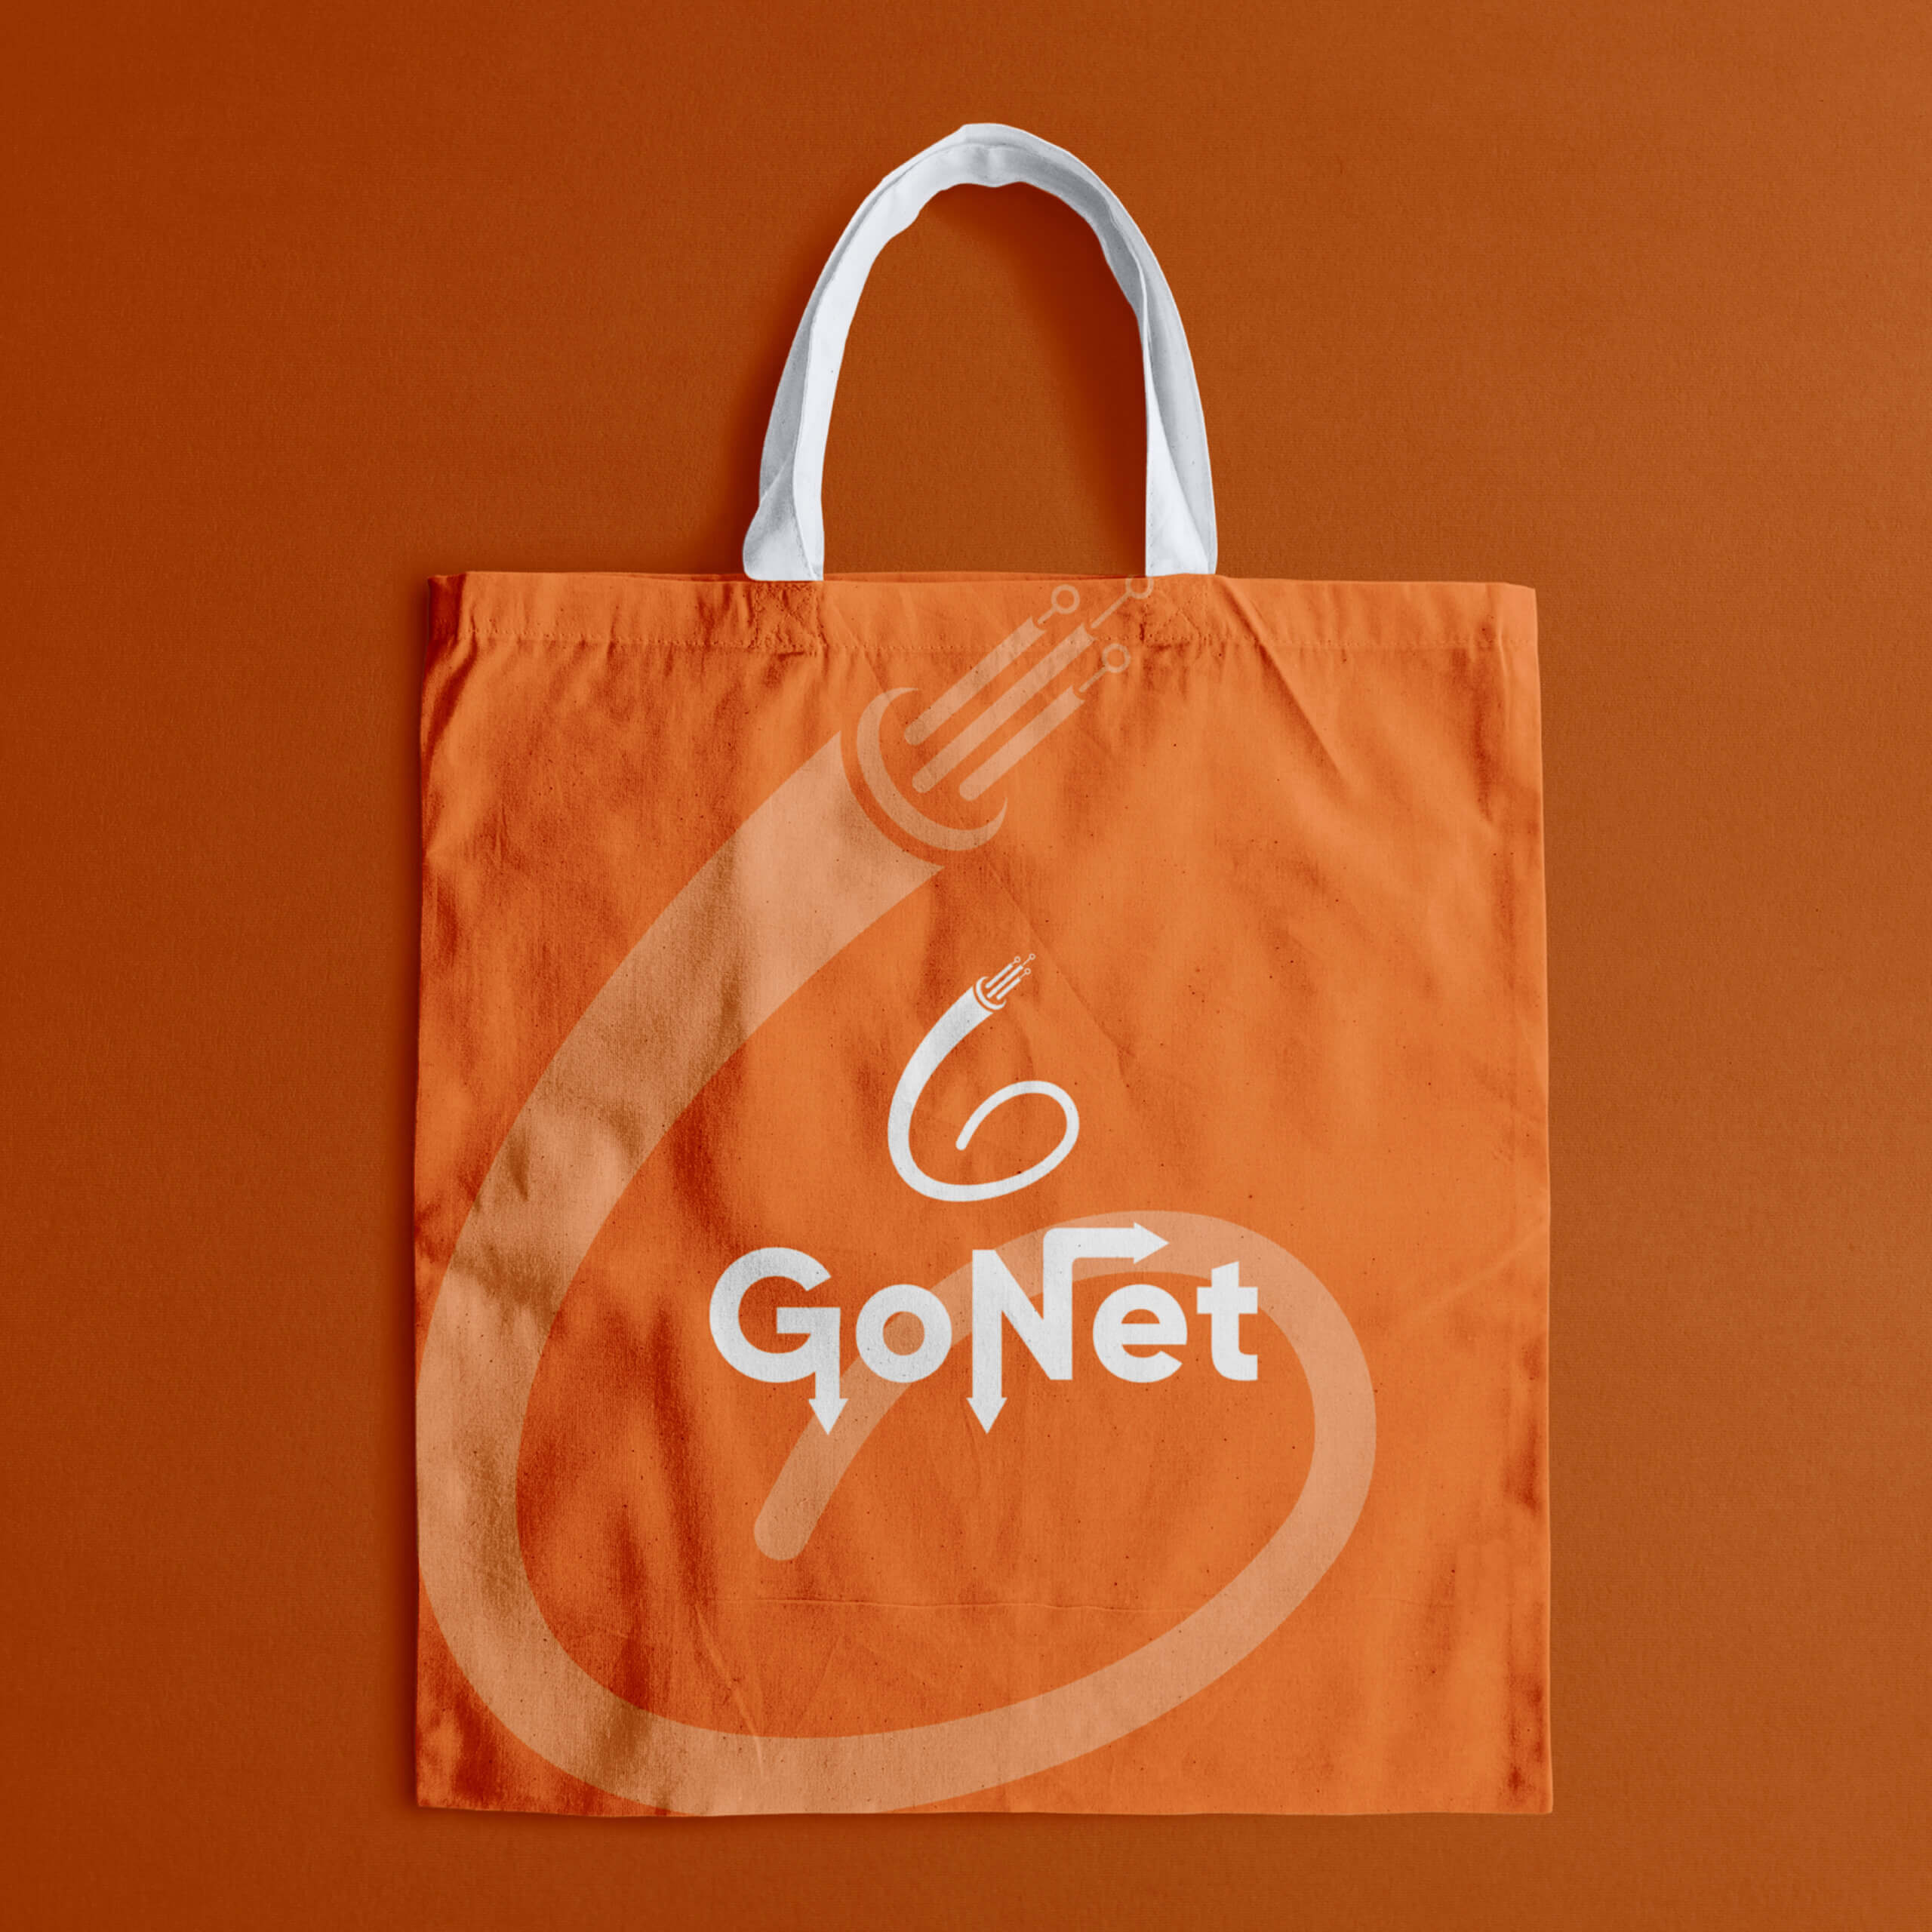 Gonet (8)